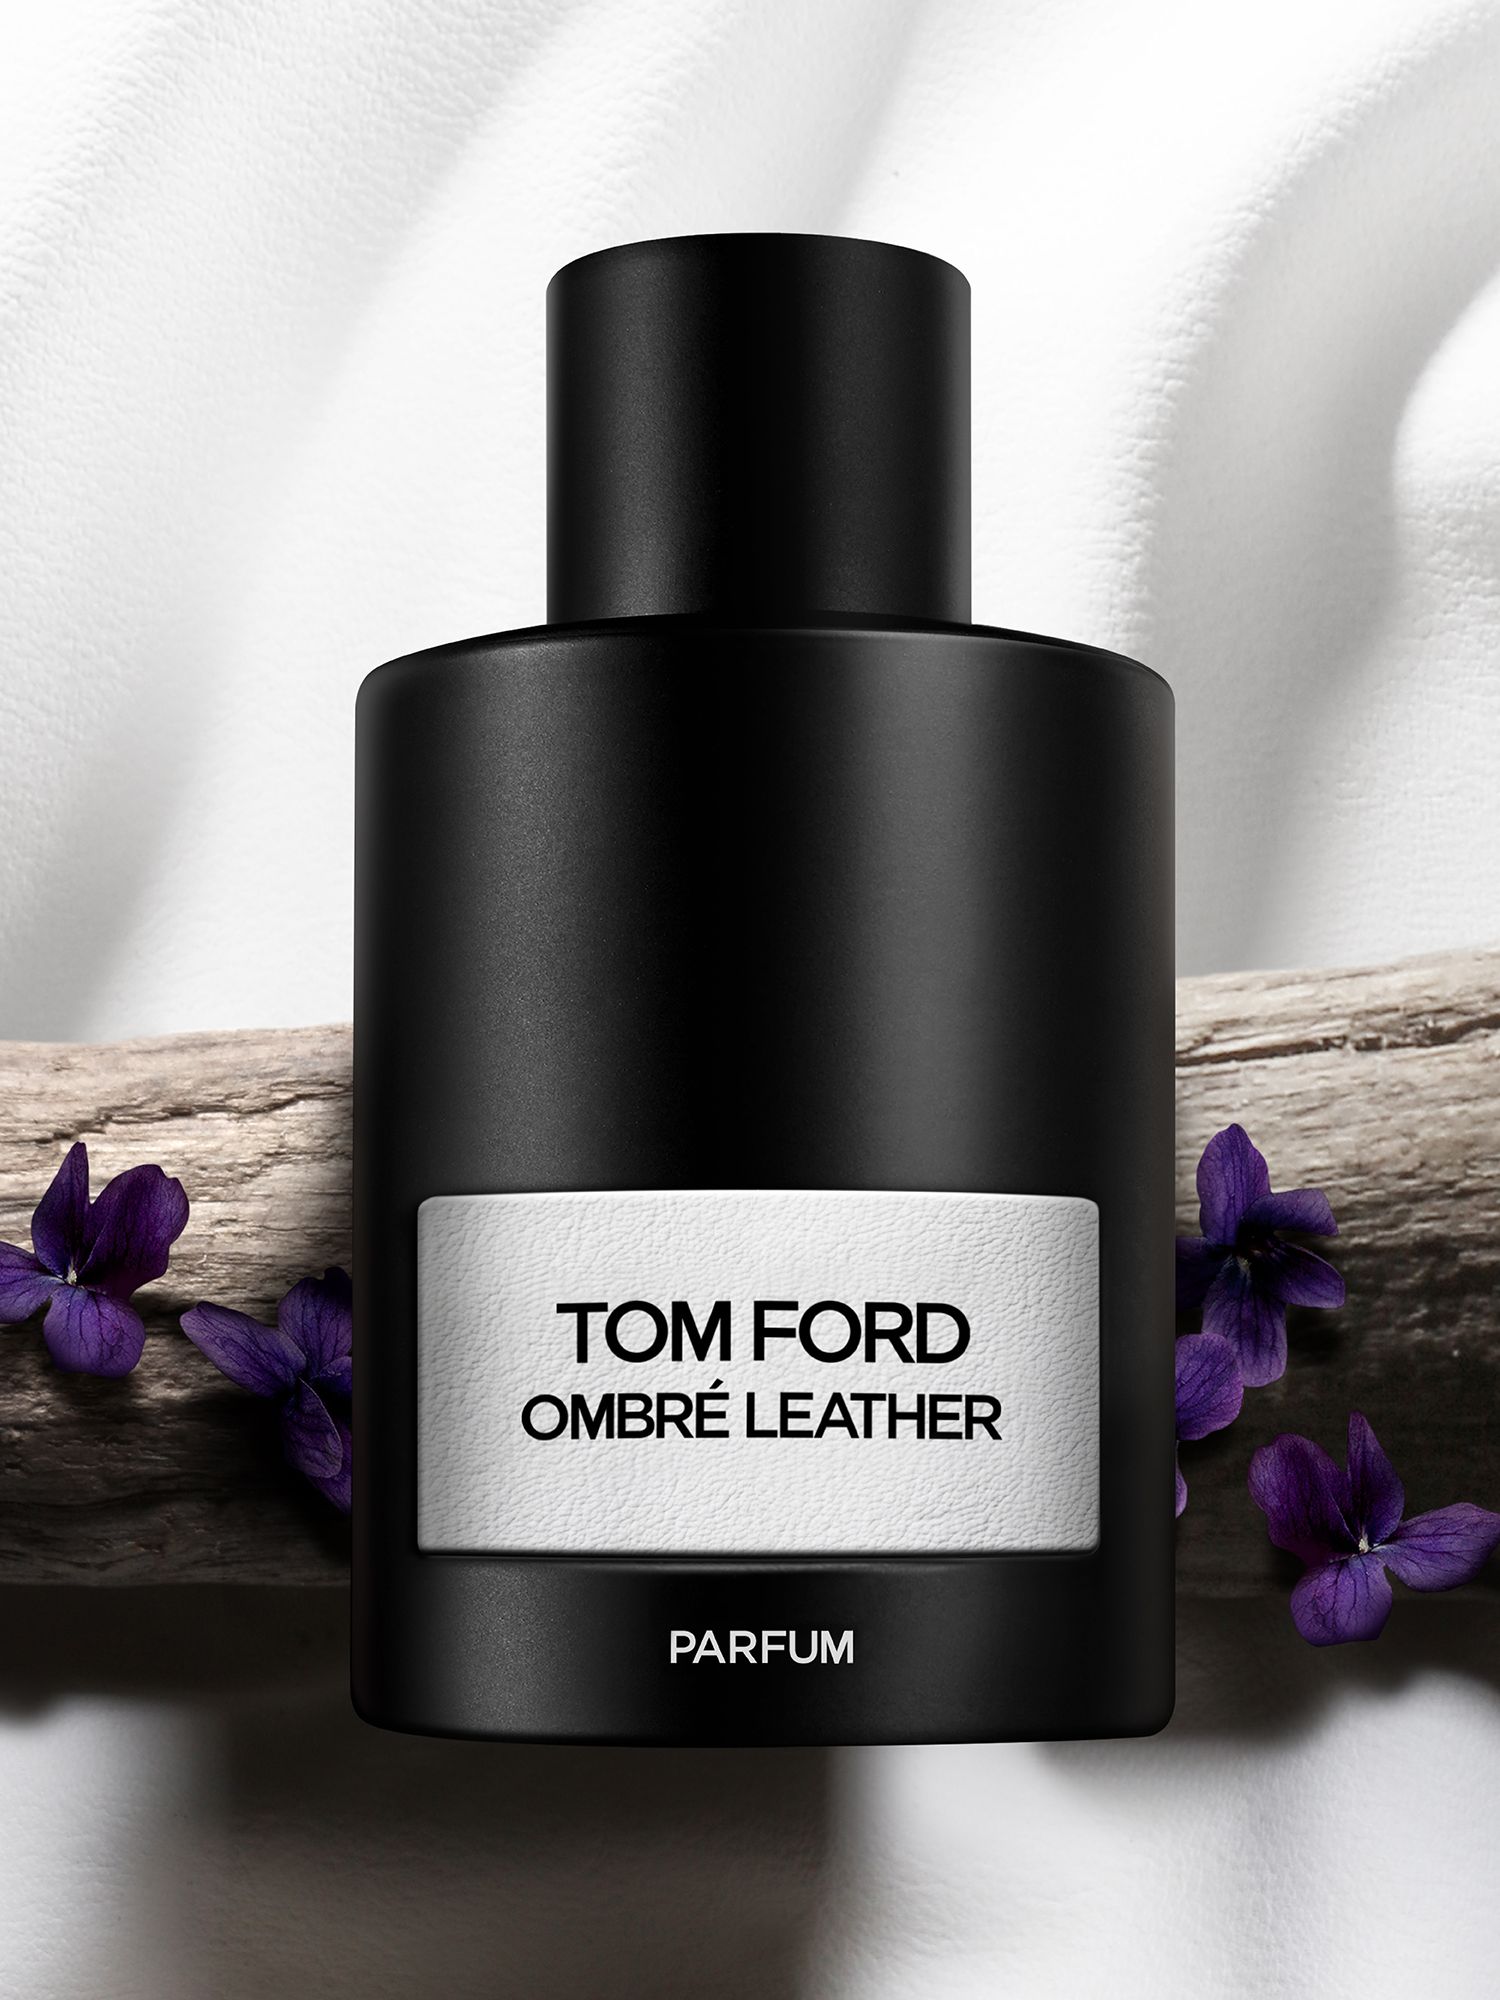 TOM FORD Ombré Leather Parfum, 50ml